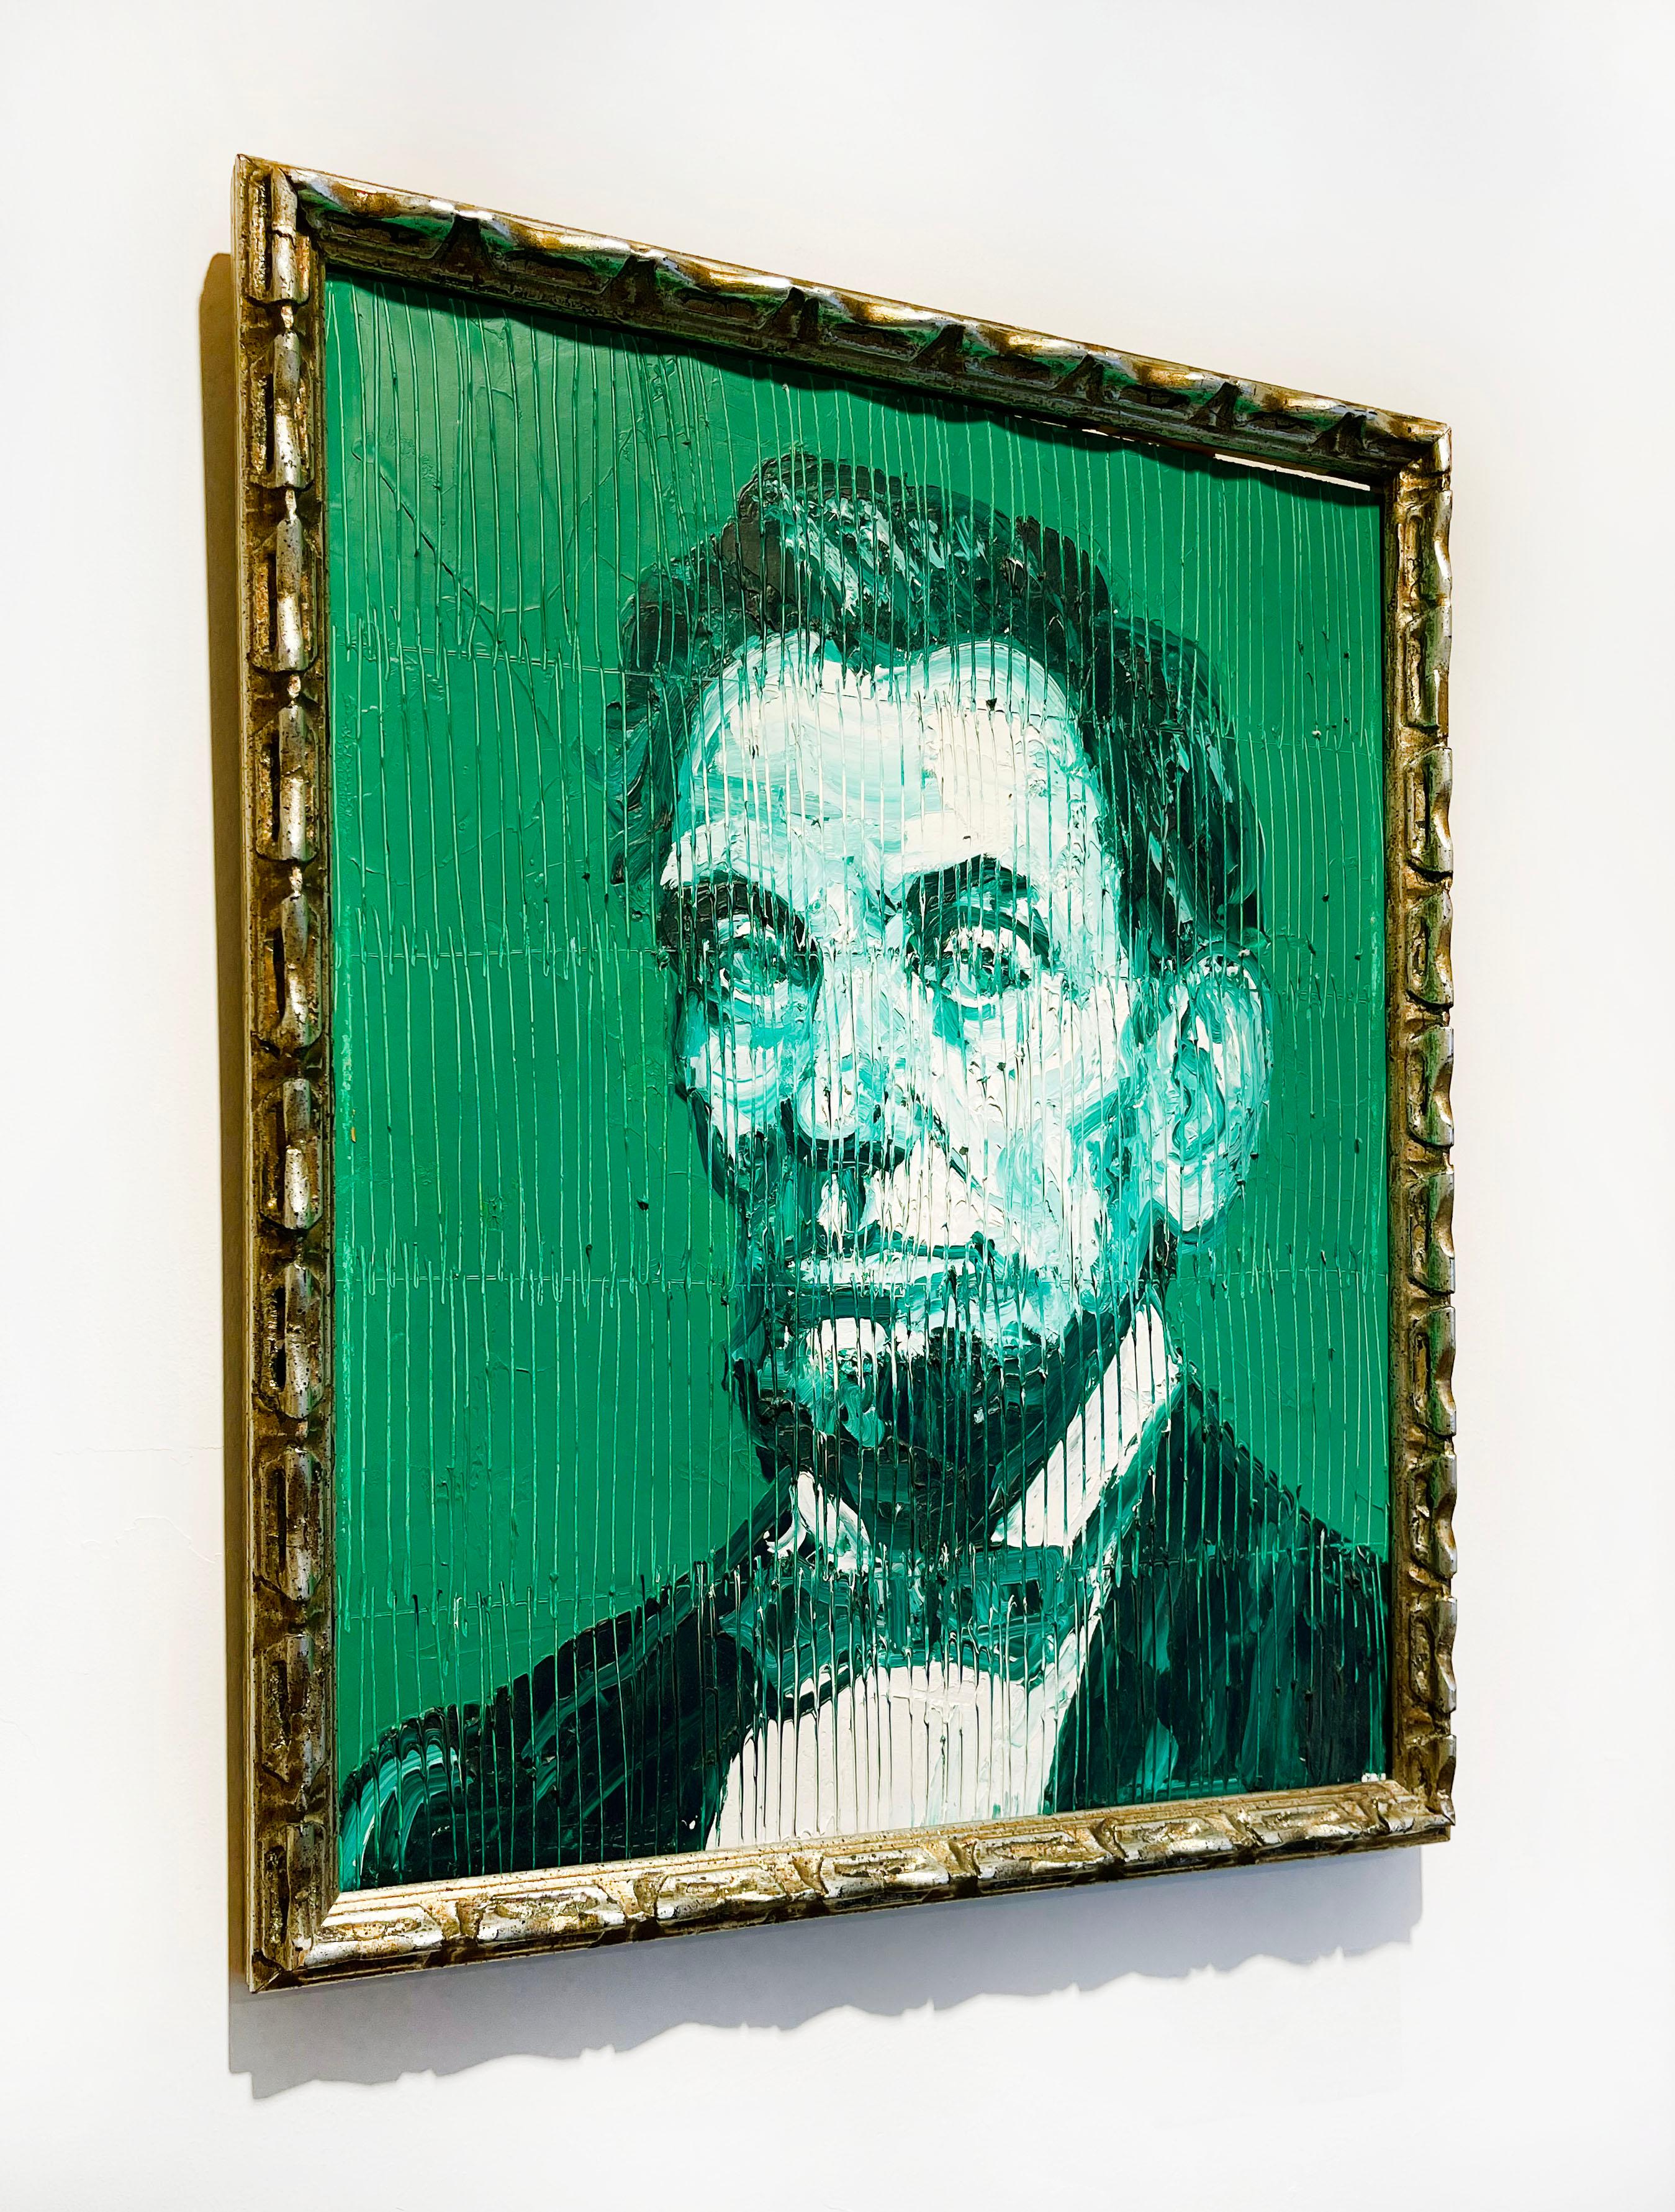 Künstler:  Slonem, Hunt
Titel:  Ohne Titel (Emerald Abe) 
Serie:  Abraham Lincoln
Datum:  2019
Medium:  Öl auf Holz
Ungerahmt Abmessungen:  18